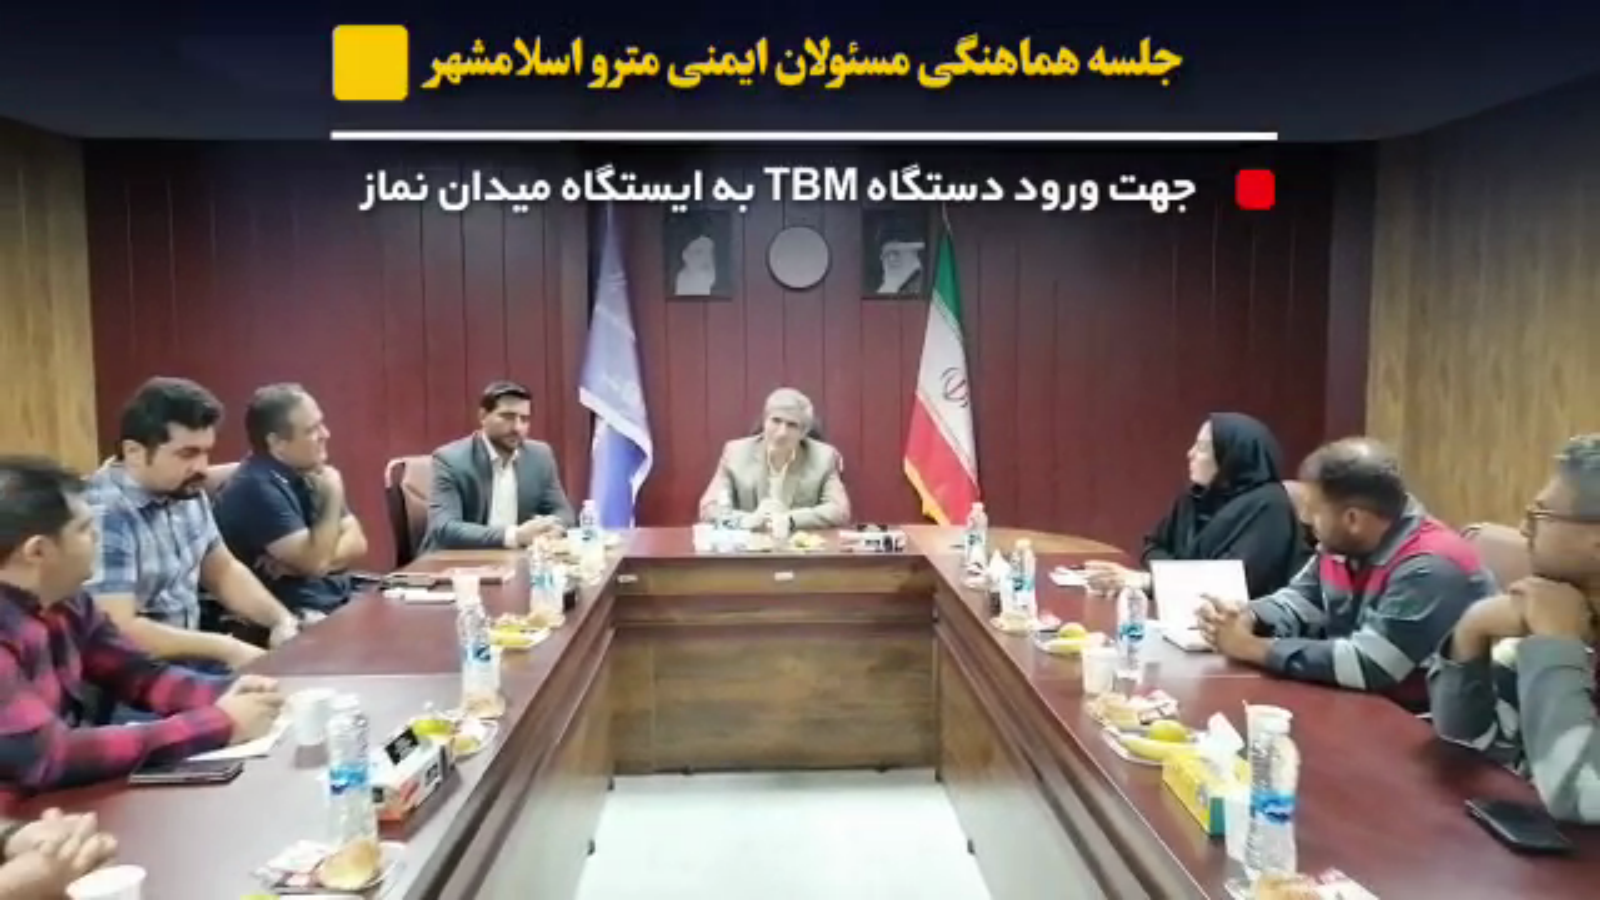 برگزاری جلسه هماهنگی مسئولان ایمنی مترو اسلامشهر جهت ورود دستگاه TBM